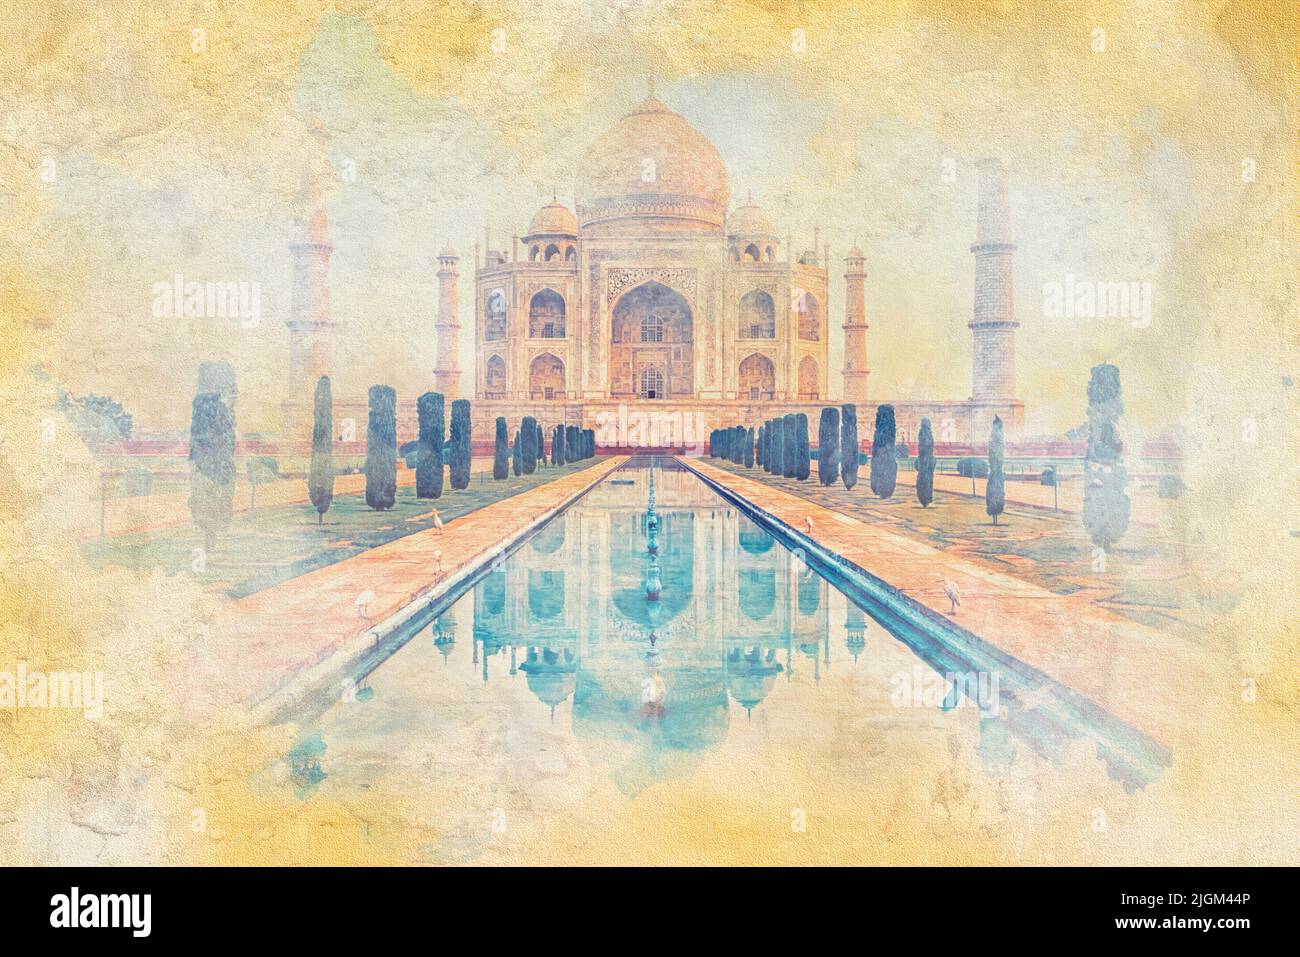 Mausolée Taj Mahal en Inde - illustration de l'effet d'aquarelle Banque D'Images